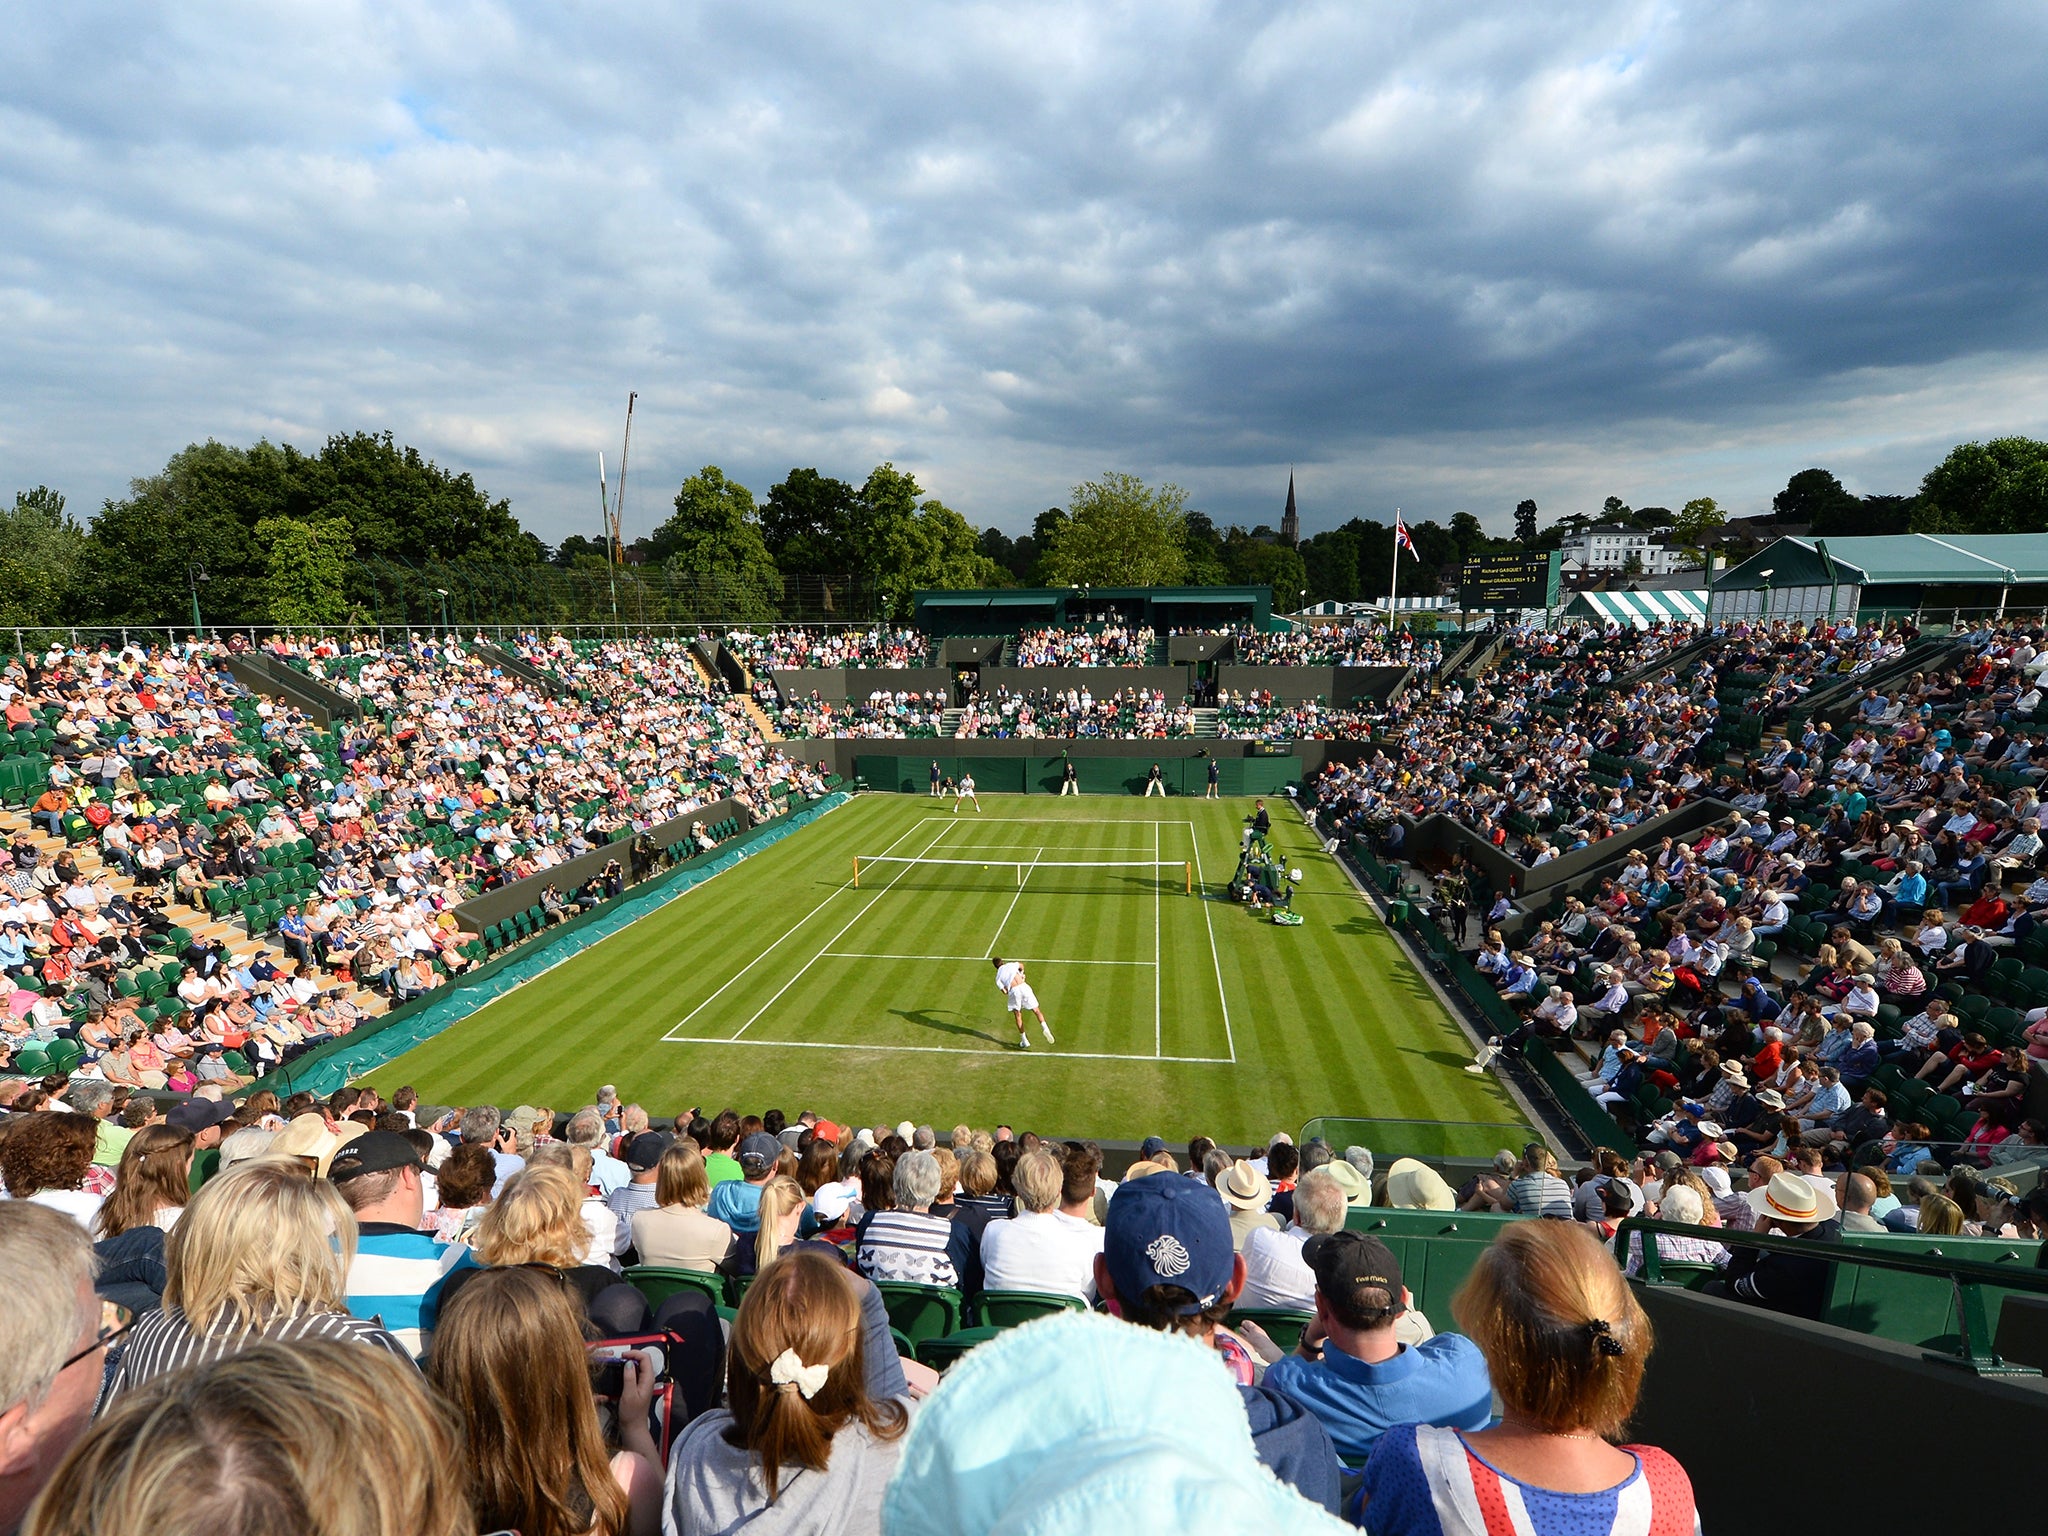 A view of Wimbledon